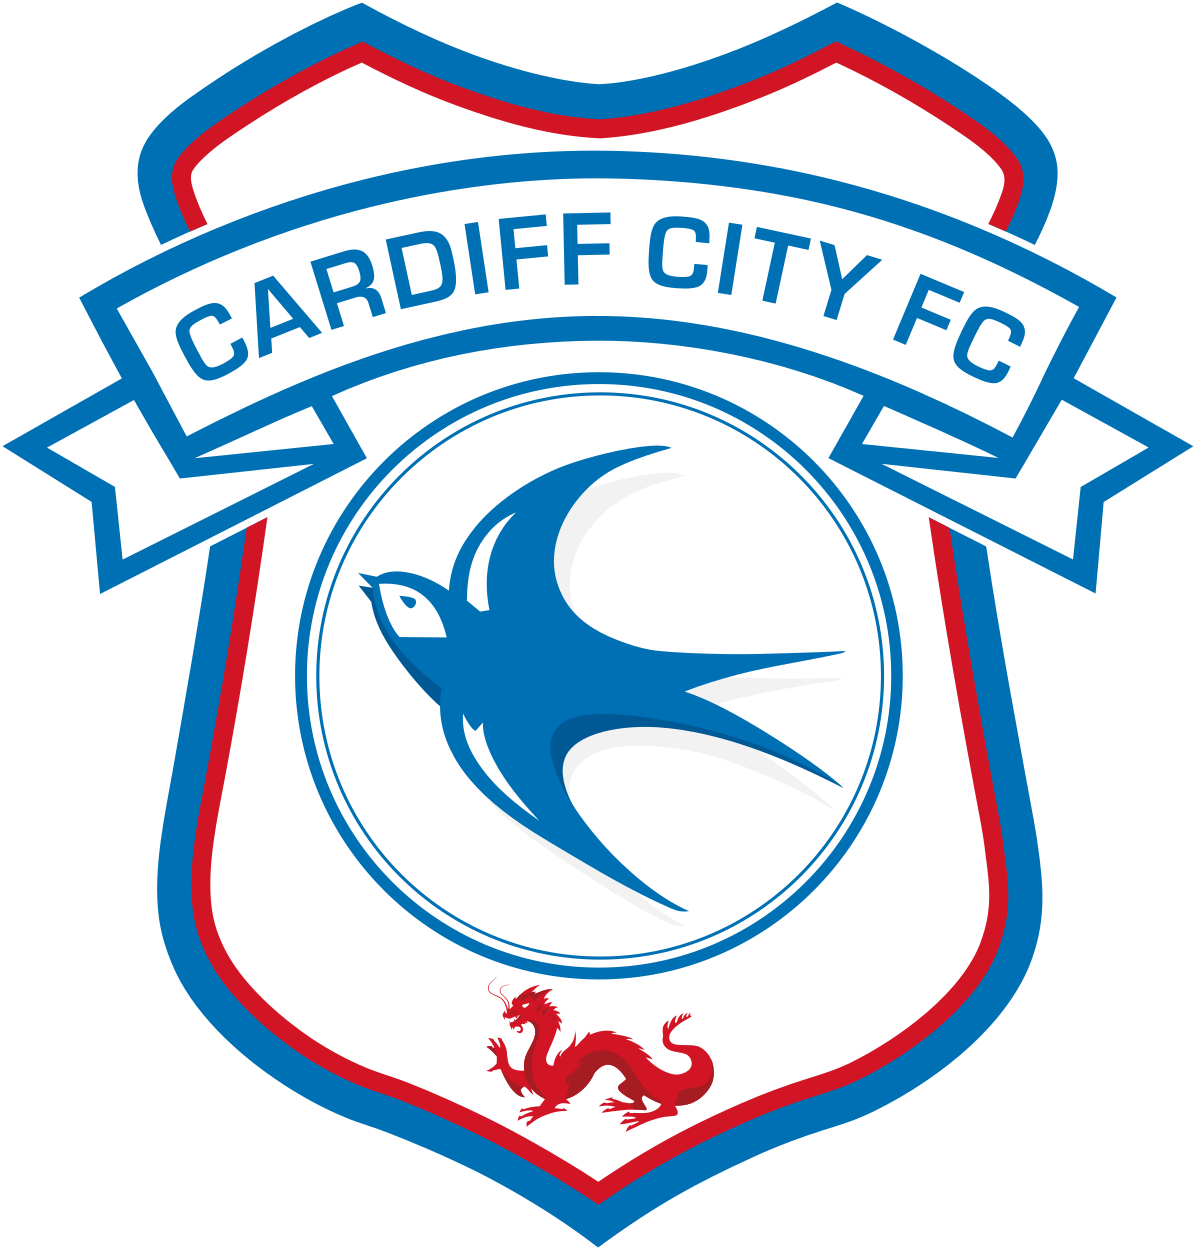 Cardiff City F C logo PNG Bildhintergrund